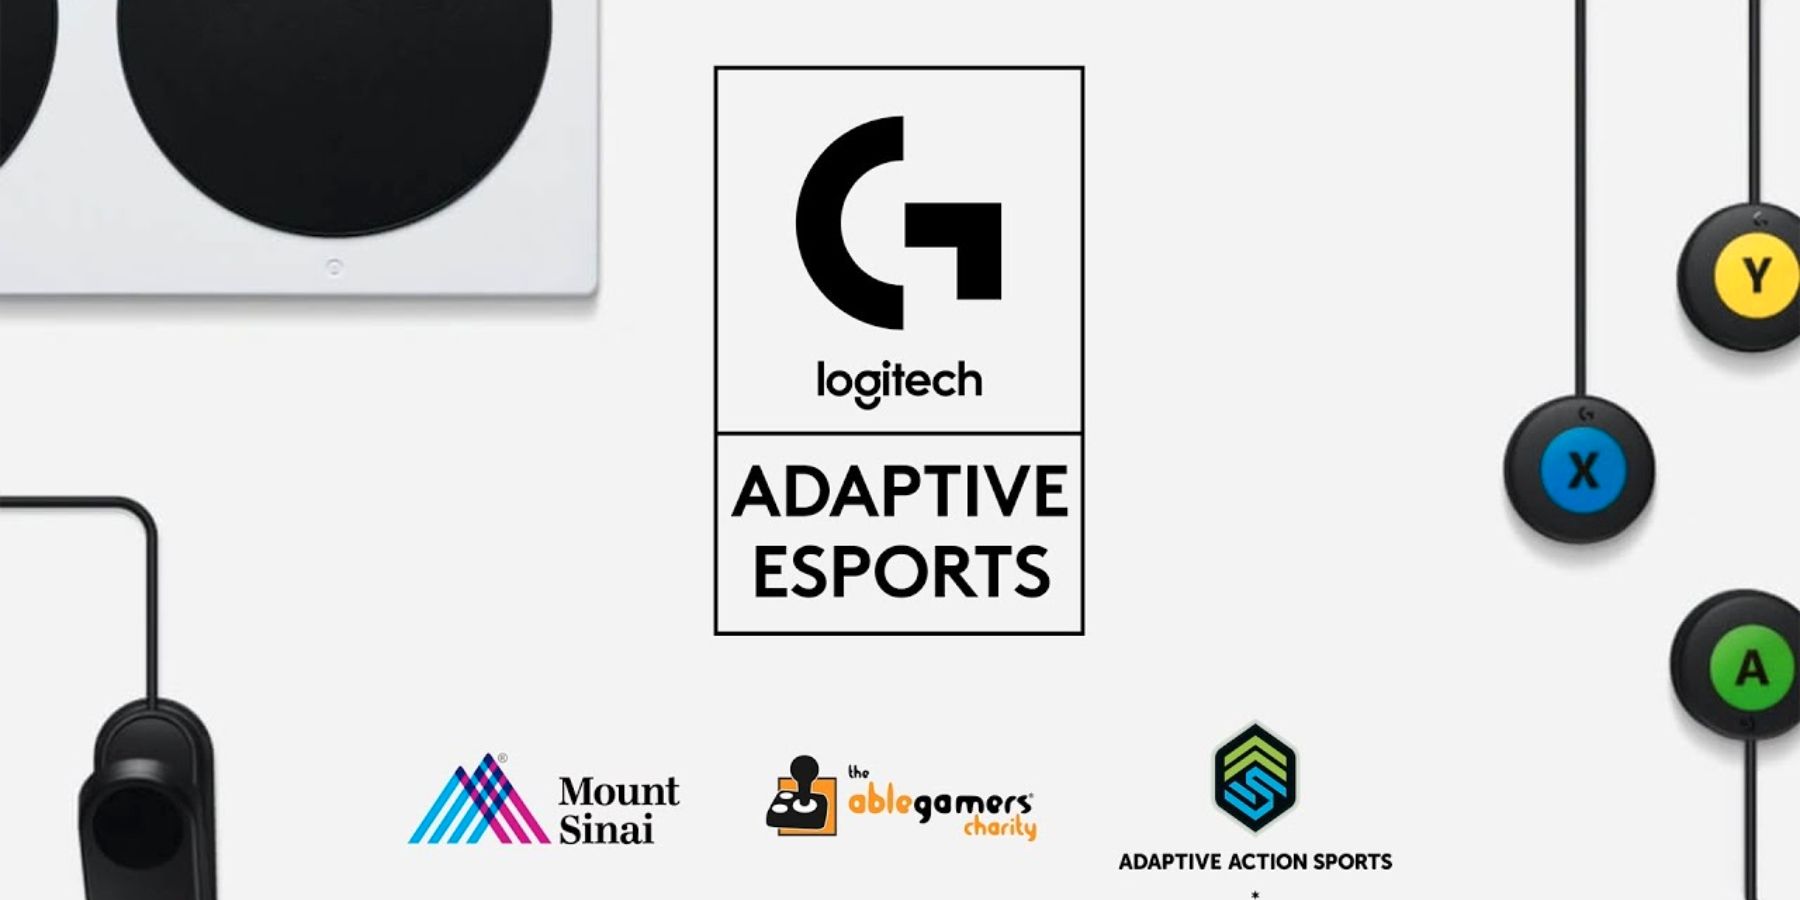 Logitech G ospita la competizione Adaptive Esports per i giocatori con disabilità